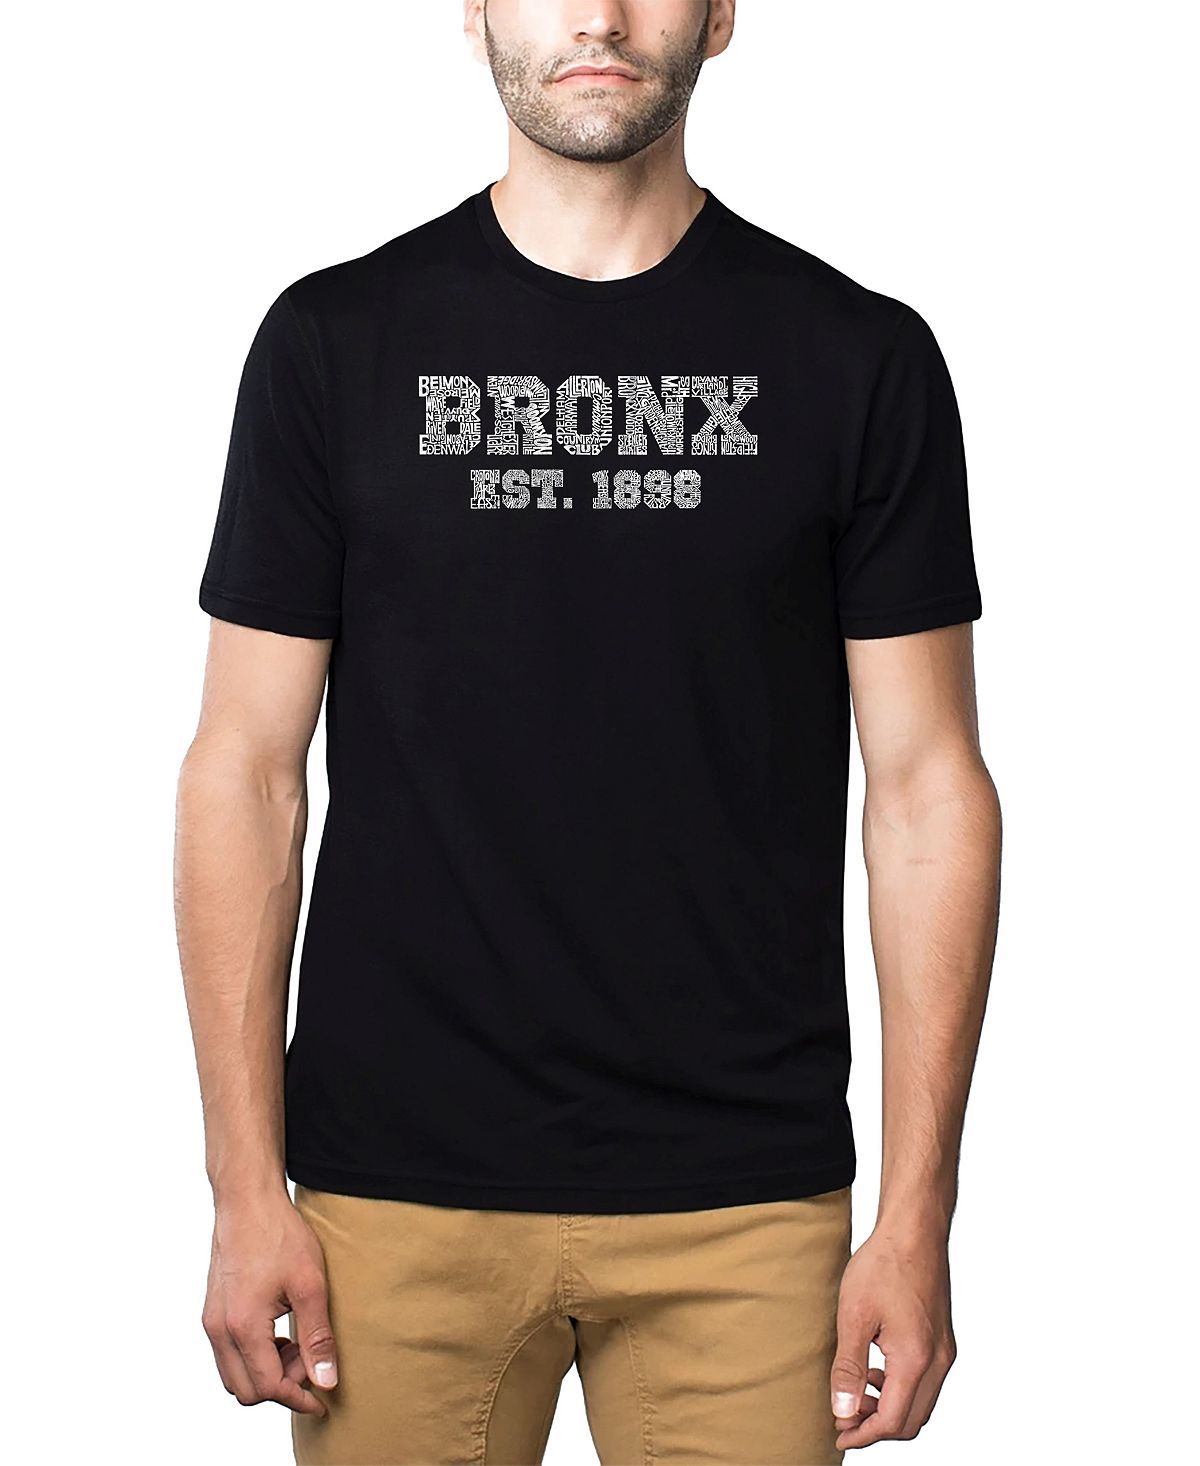 Мужская футболка premium blend word art - популярный бронкс, районы нью-йорка LA Pop Art, черный цена и фото